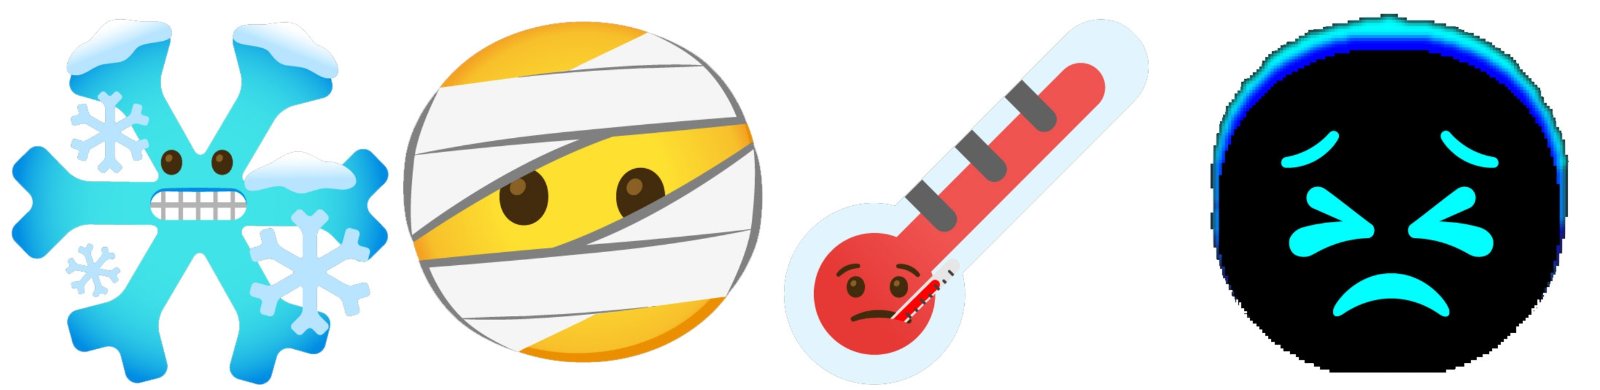 Gboard 4 combo emojis